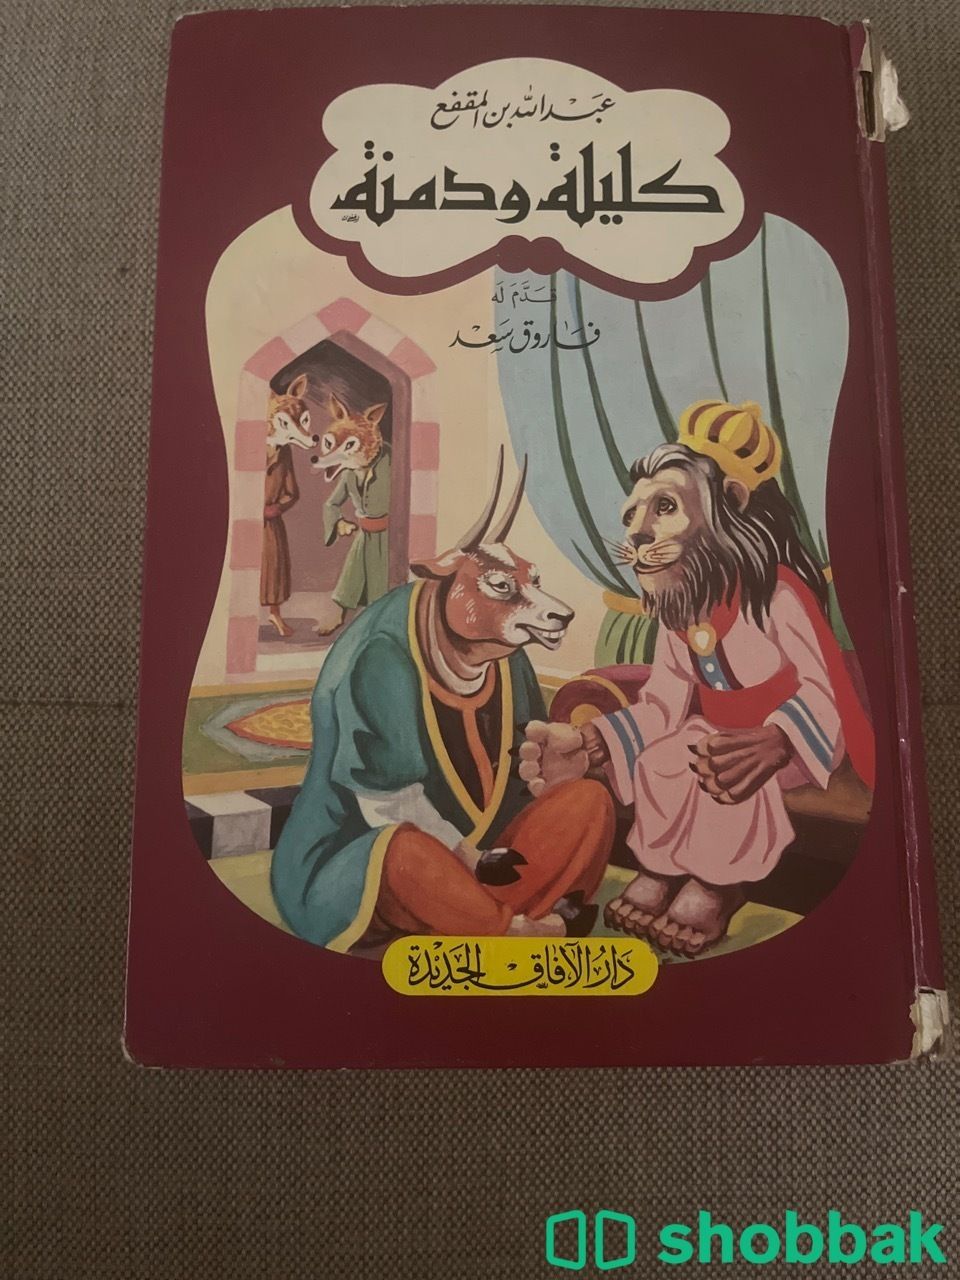 كتاب كليلة ودمنة Shobbak Saudi Arabia